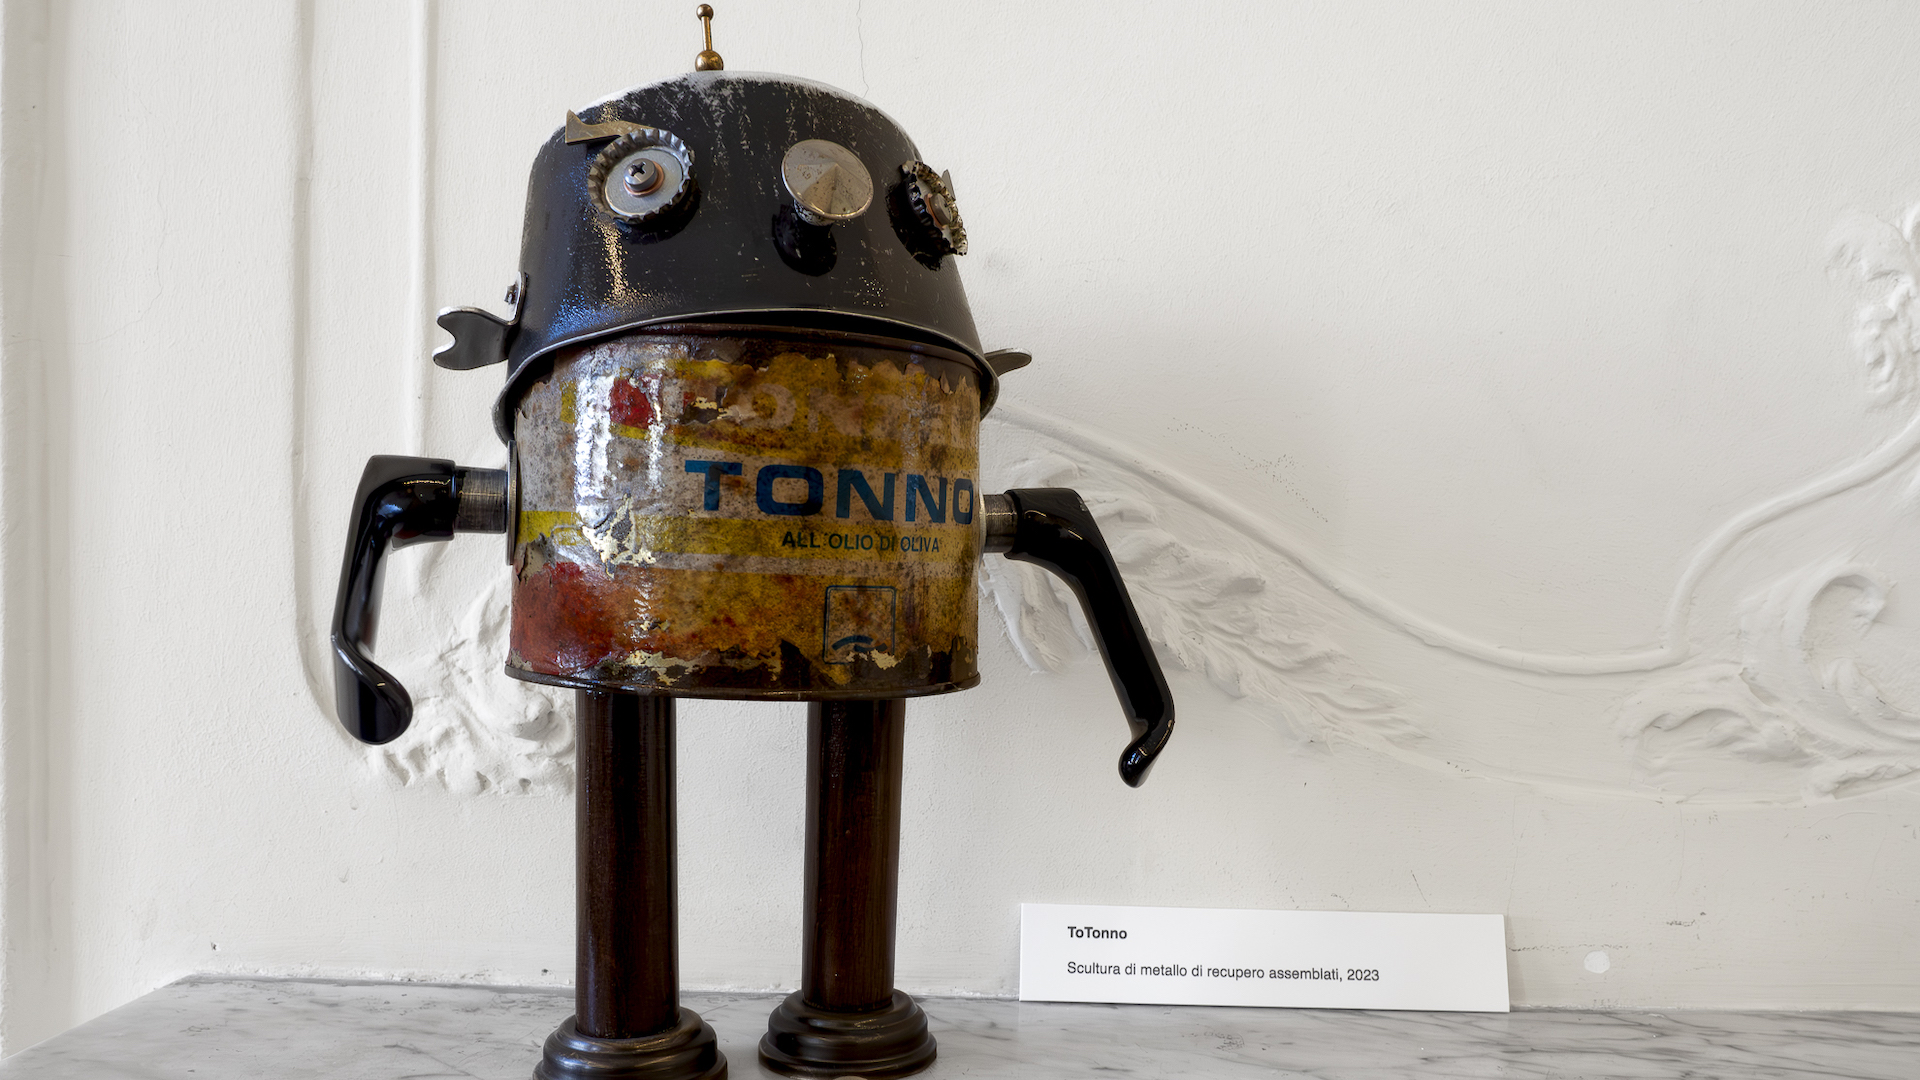 La robotica, l'arte, le persone e l’ambiente nelle opere poetiche di Massimo Sirelli